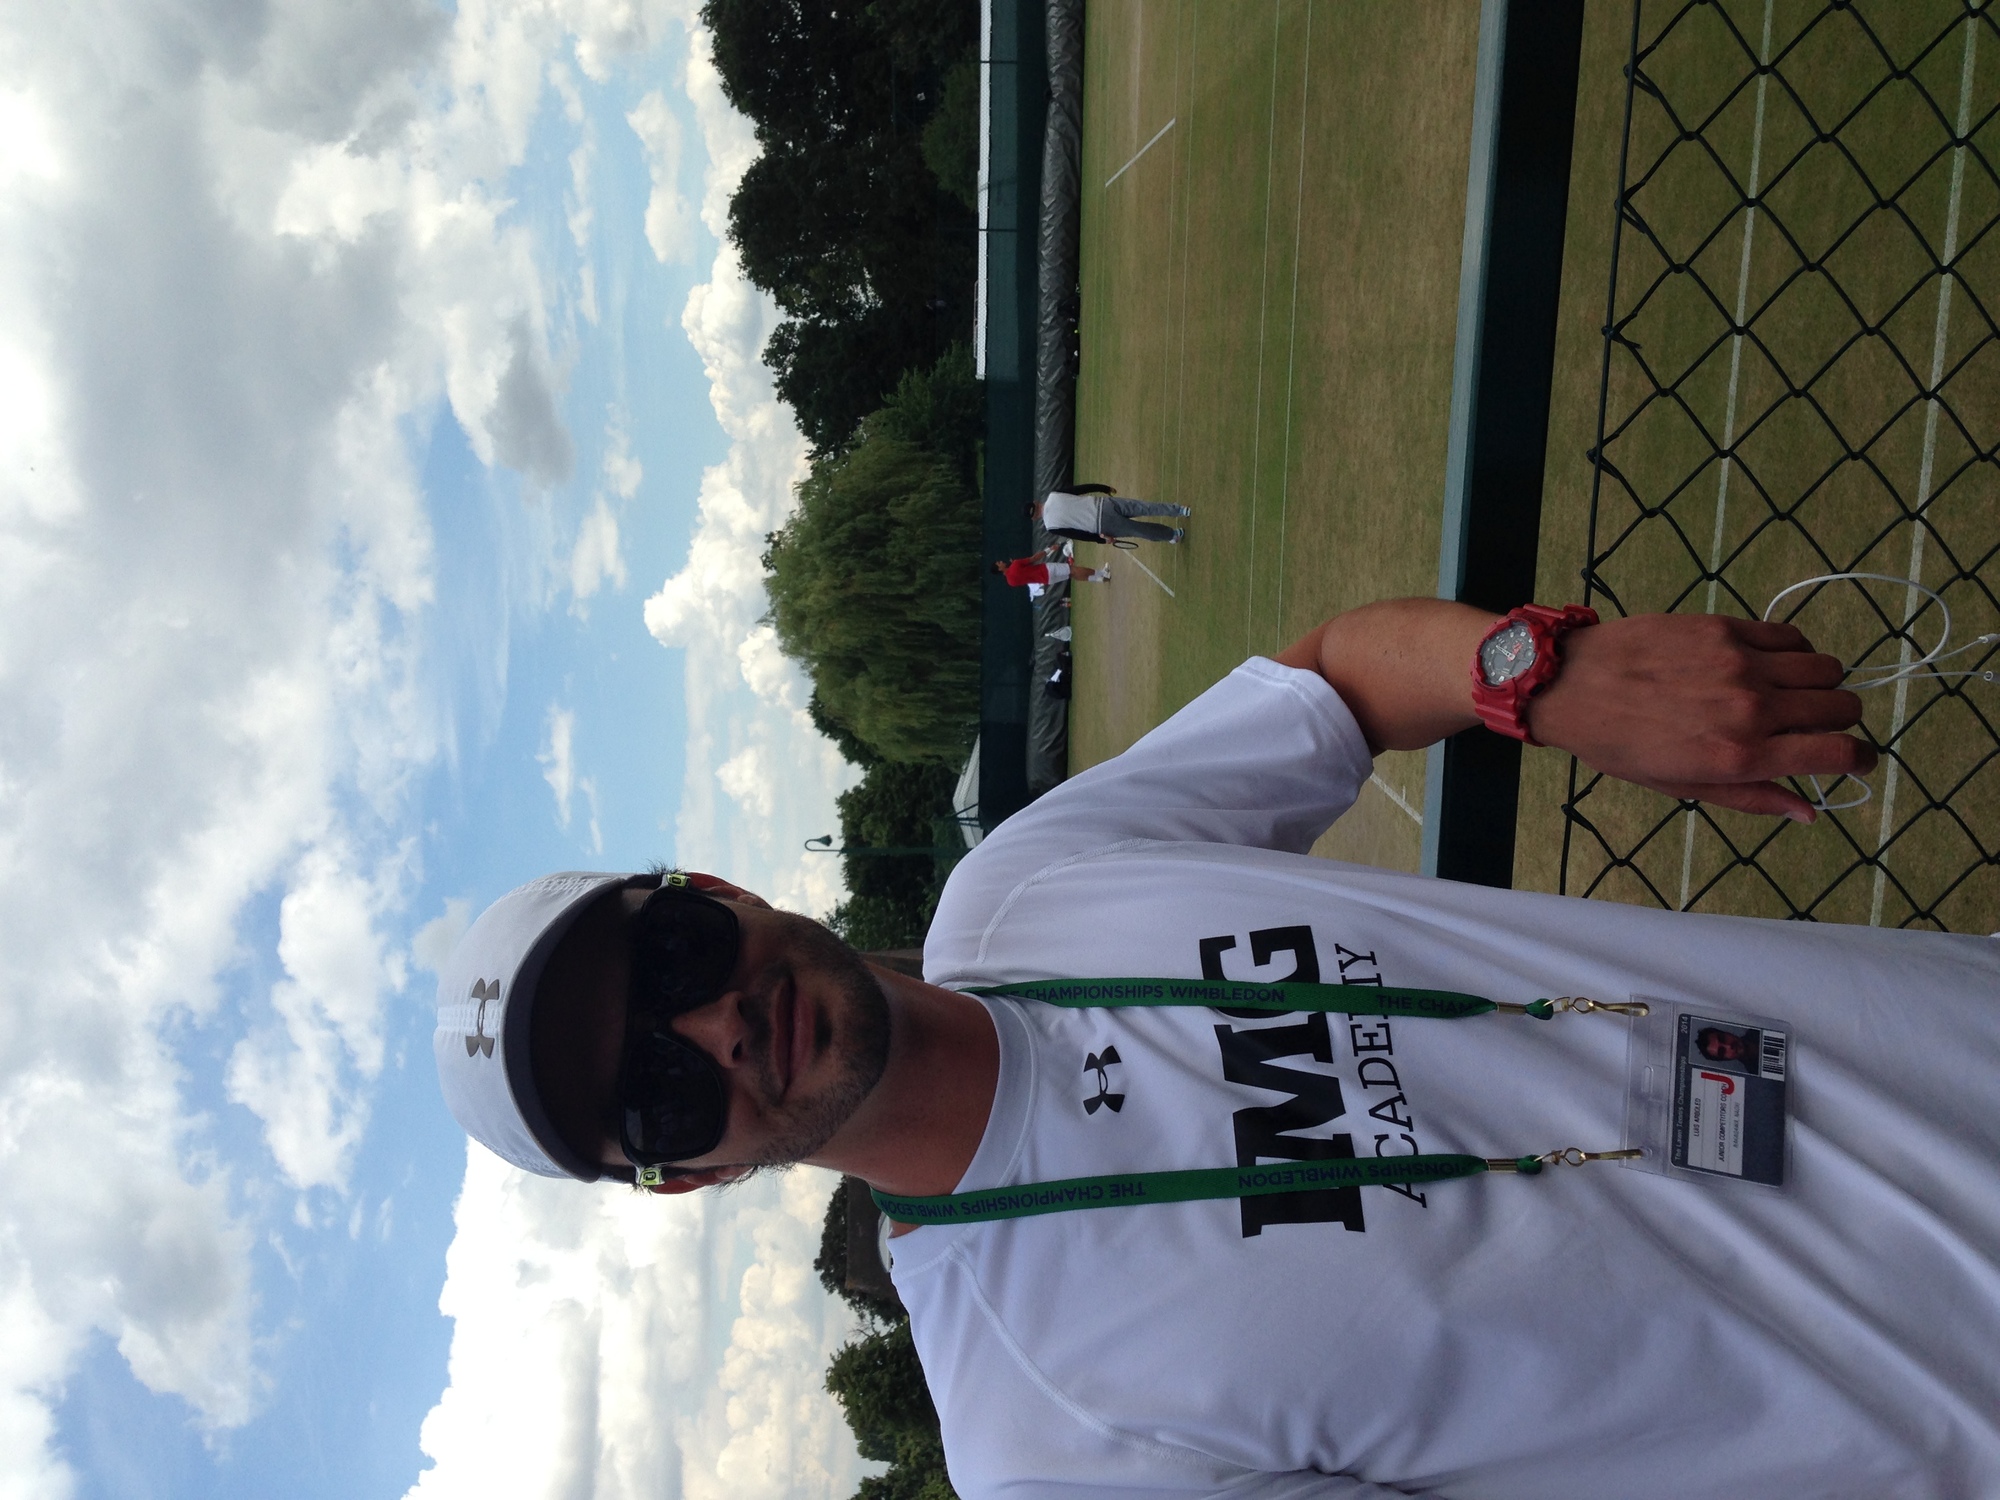 Lucho A. teaches tennis lessons in Boynton Beach , FL